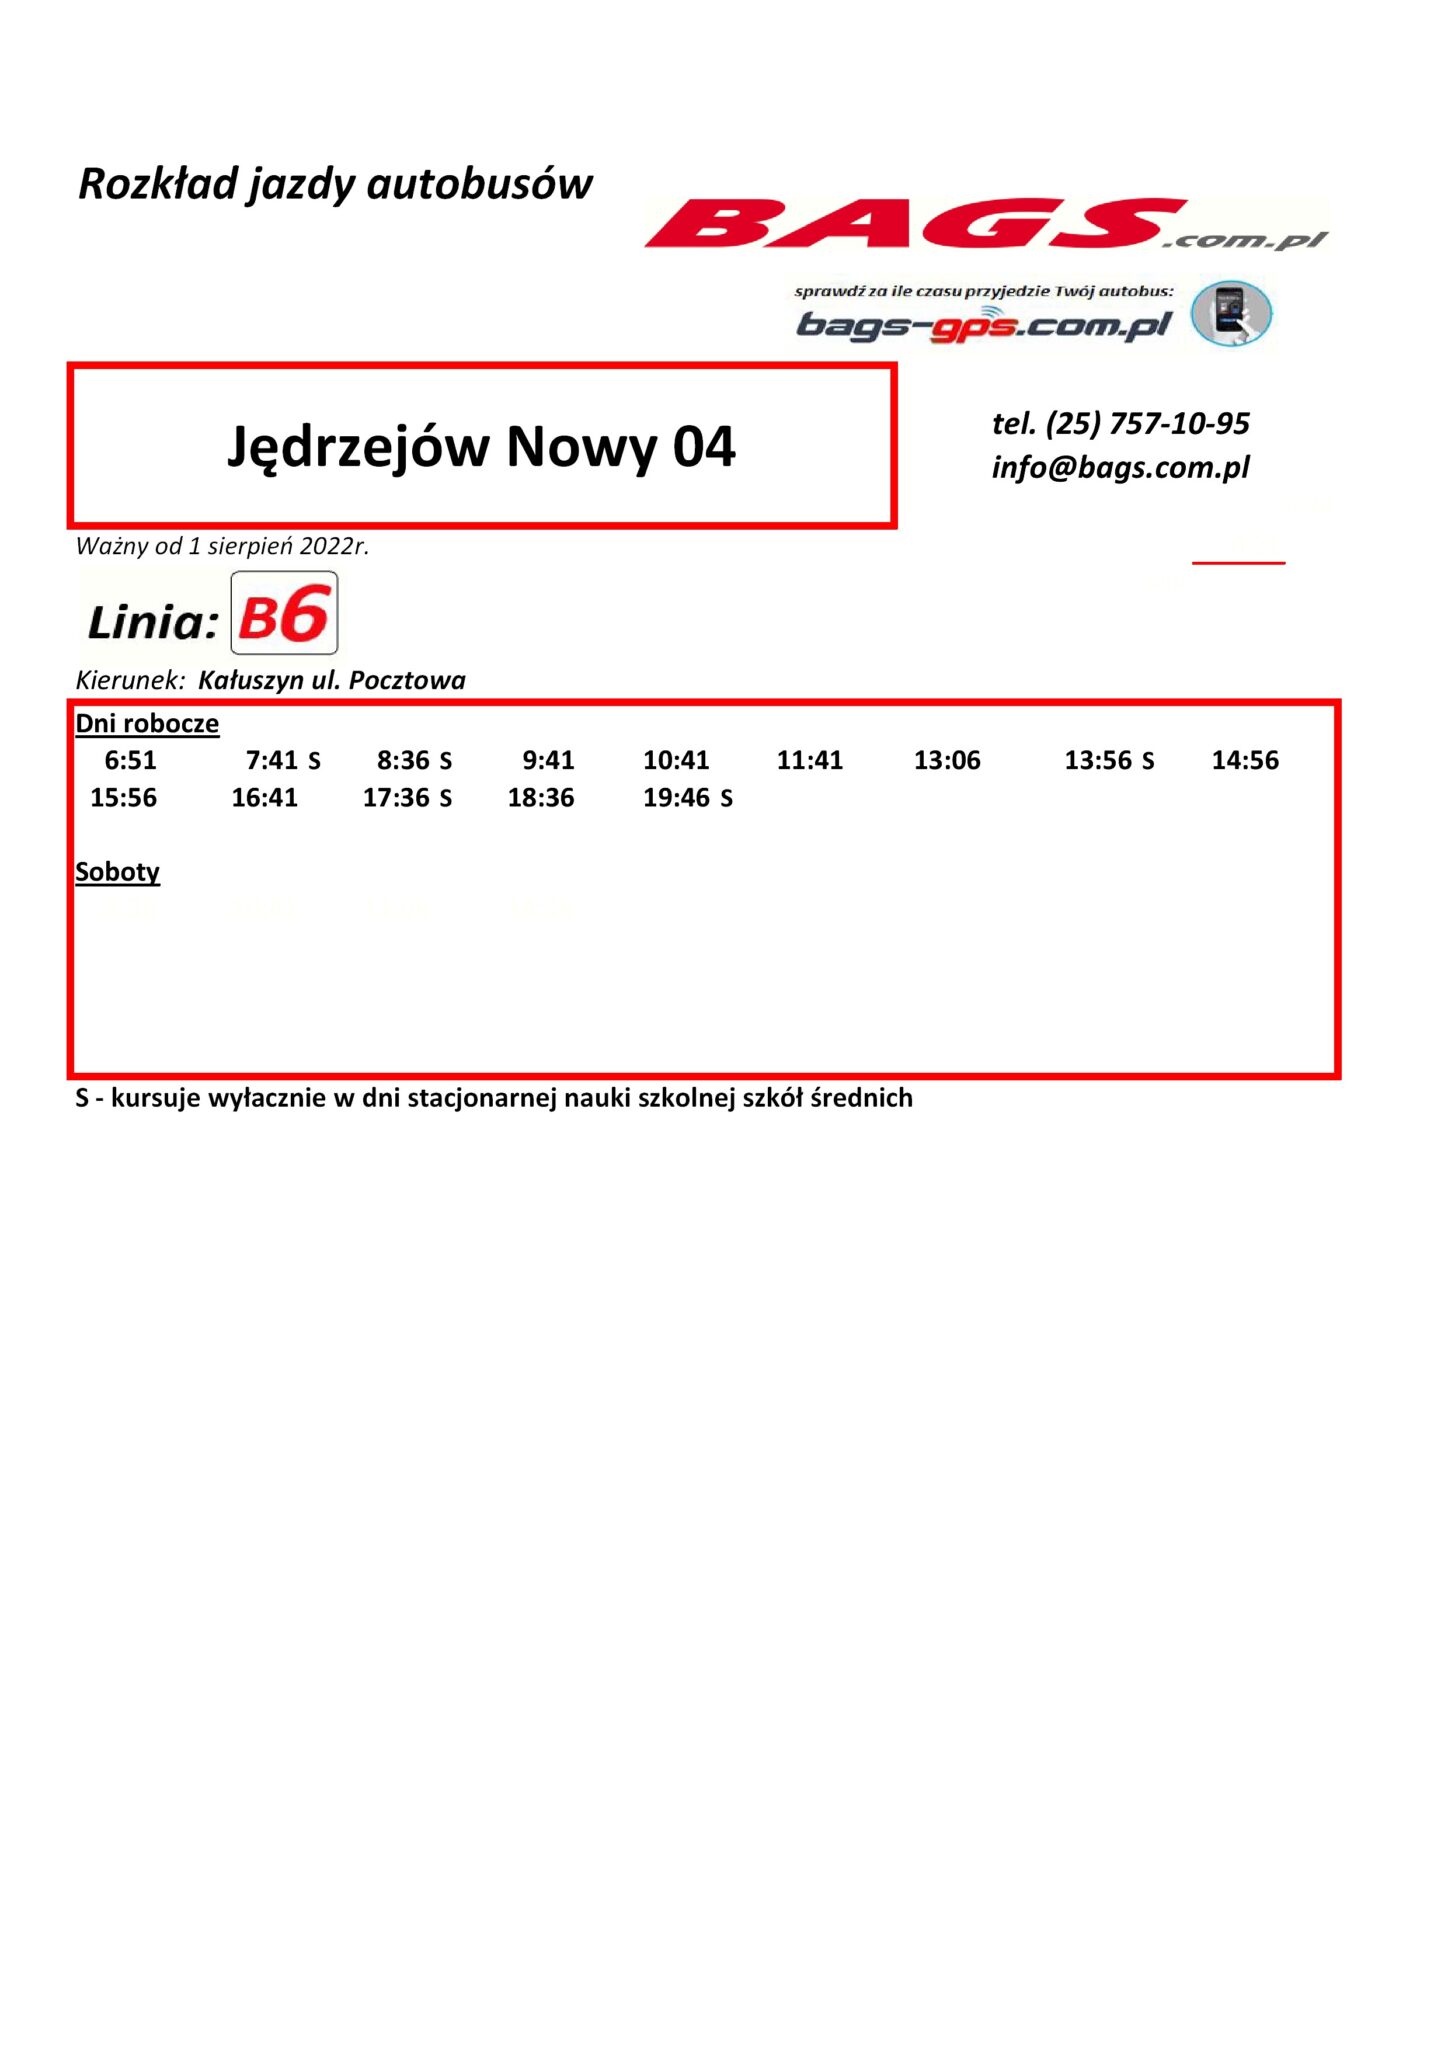 Jedrzejow-Nowy-04--1448x2048